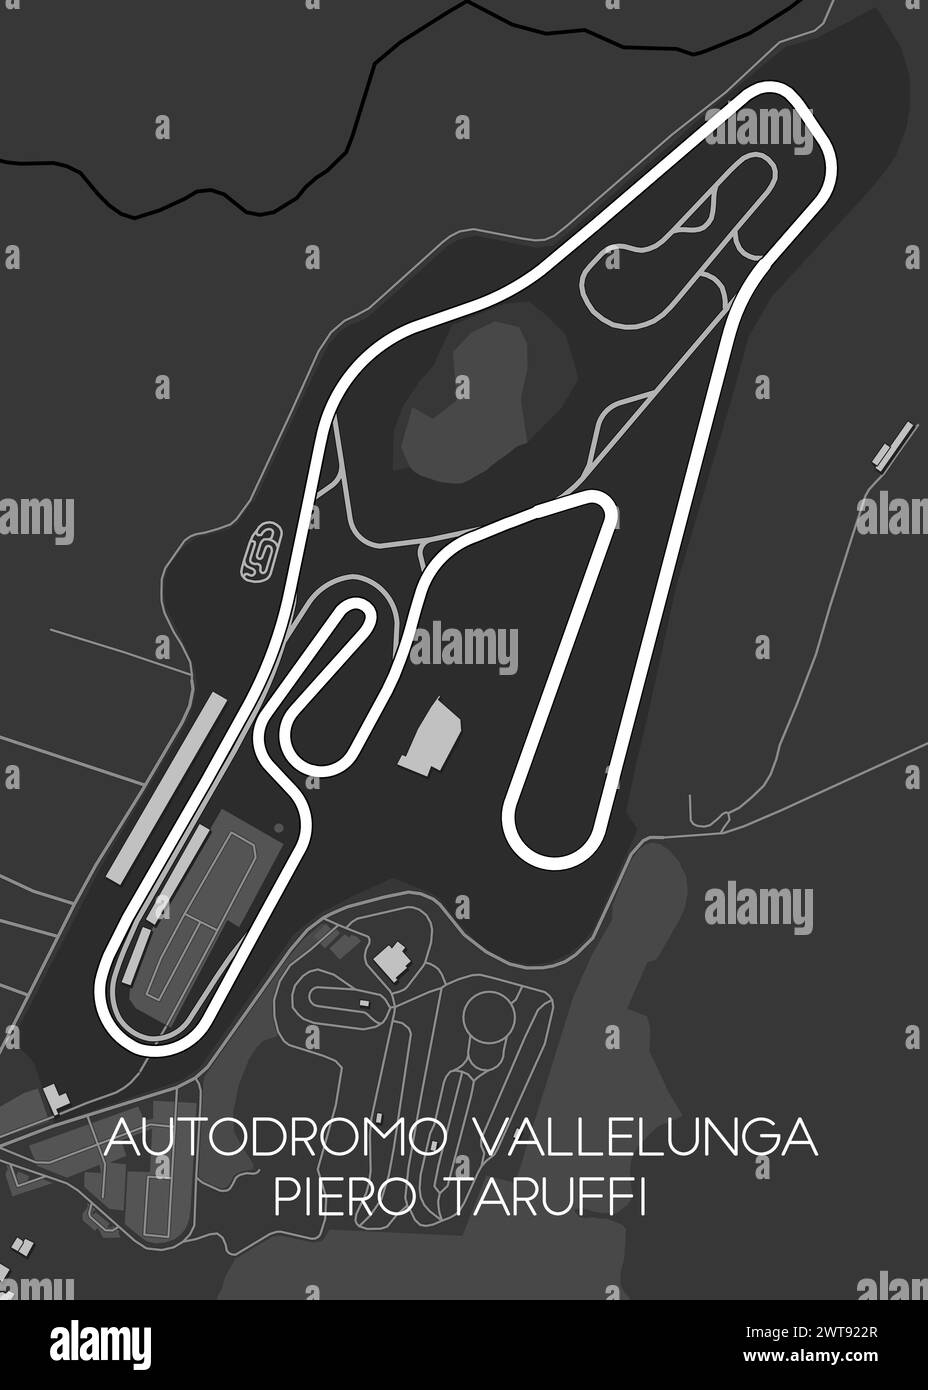 Autodromo Vallelunga Piero Taruffi cartina delle corse Illustrazione Vettoriale